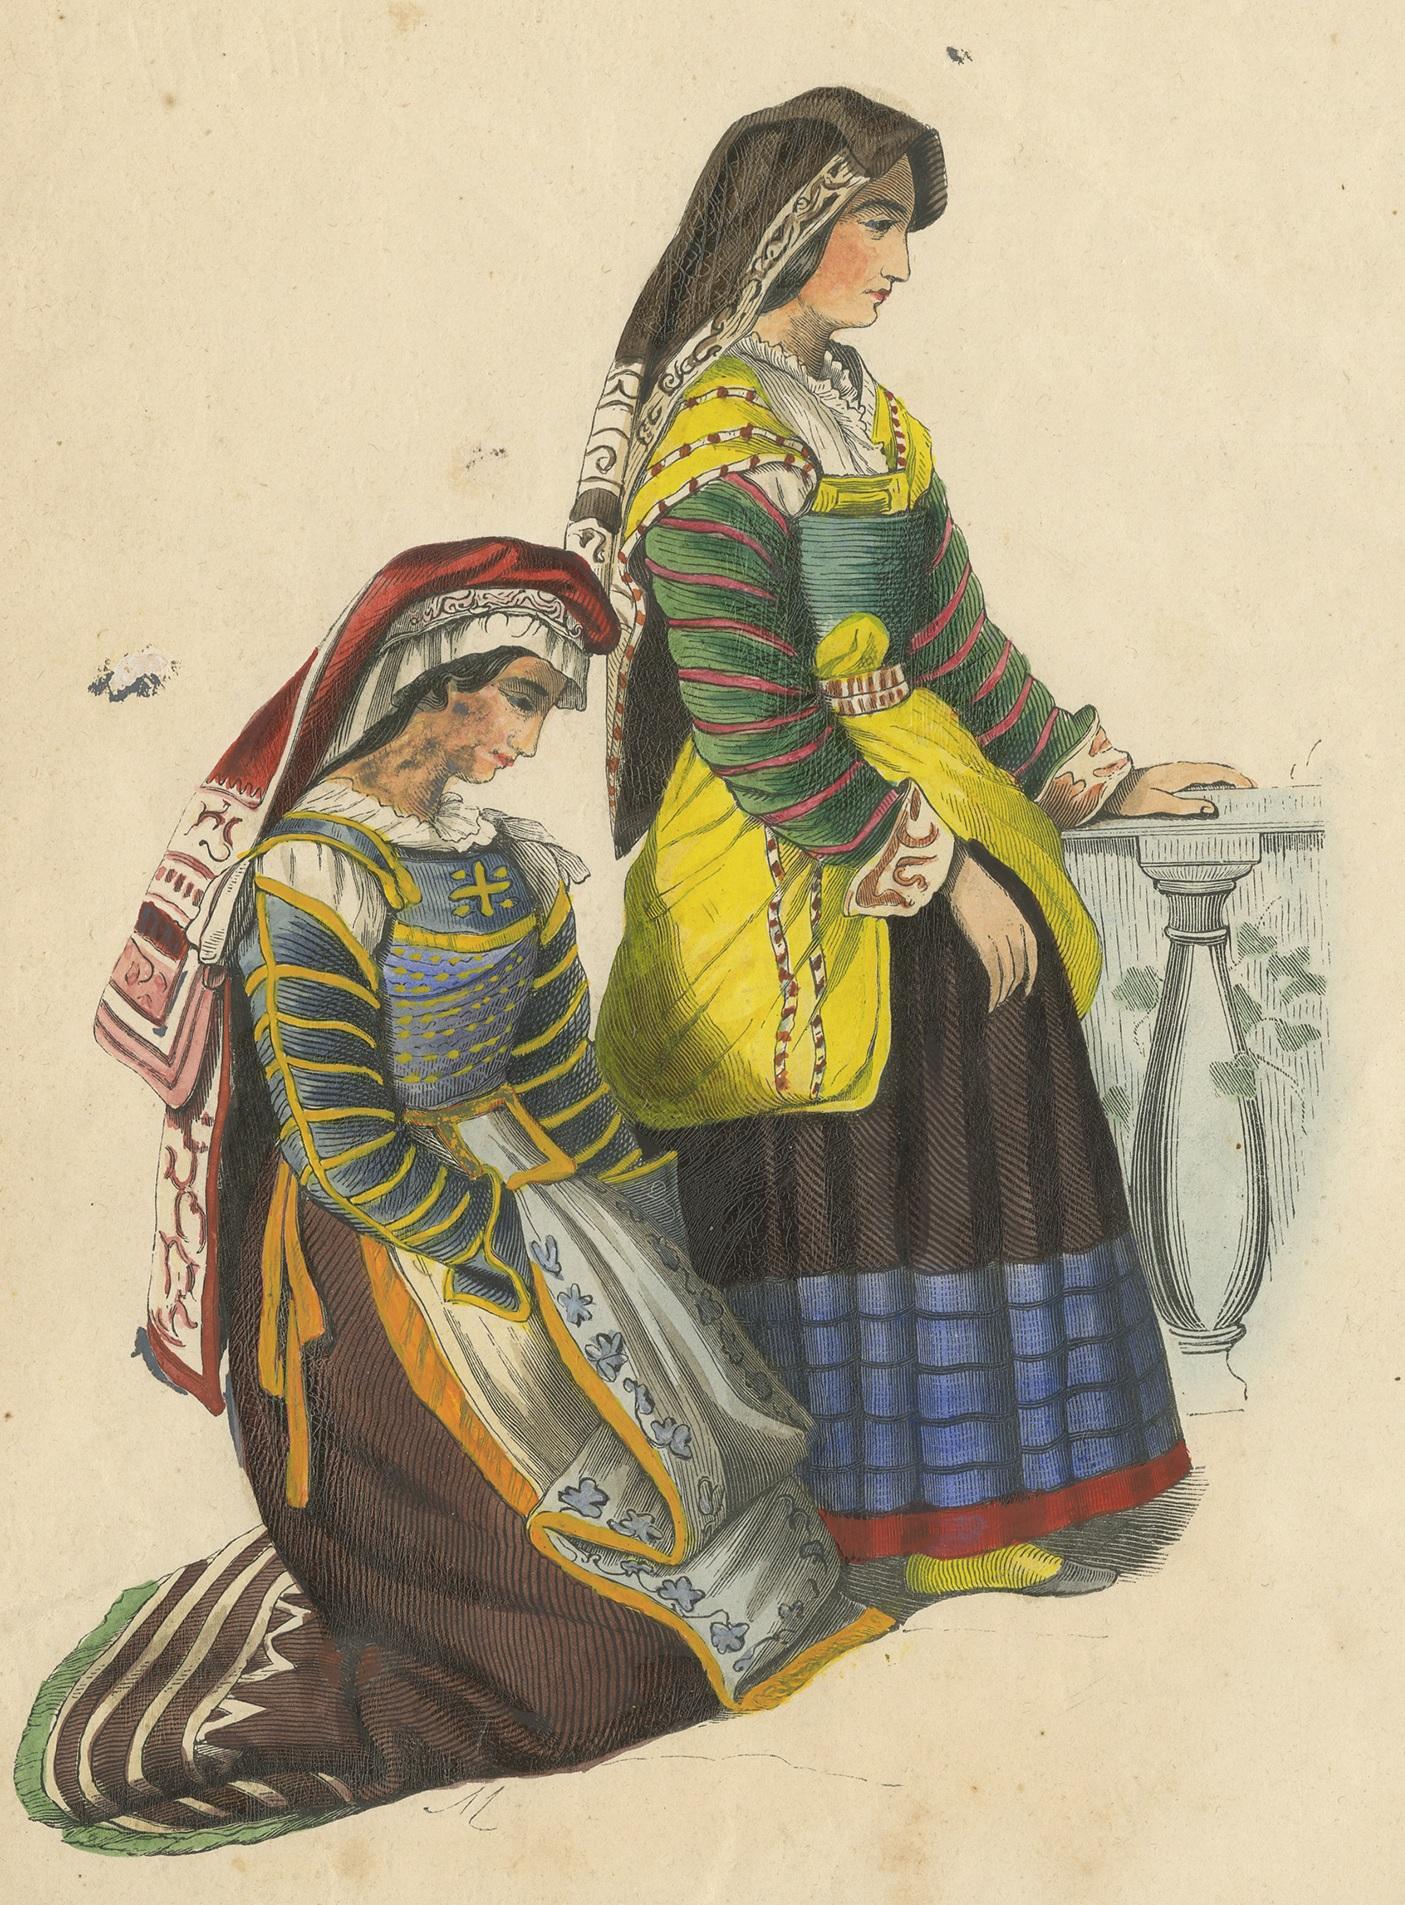 Antique costume print titled 'Femmes de Miranda'. Original antique print of Miranda women. This print originates from 'Moeurs, usages et costumes de tous les peuples du monde' by Auguste Wahlen.